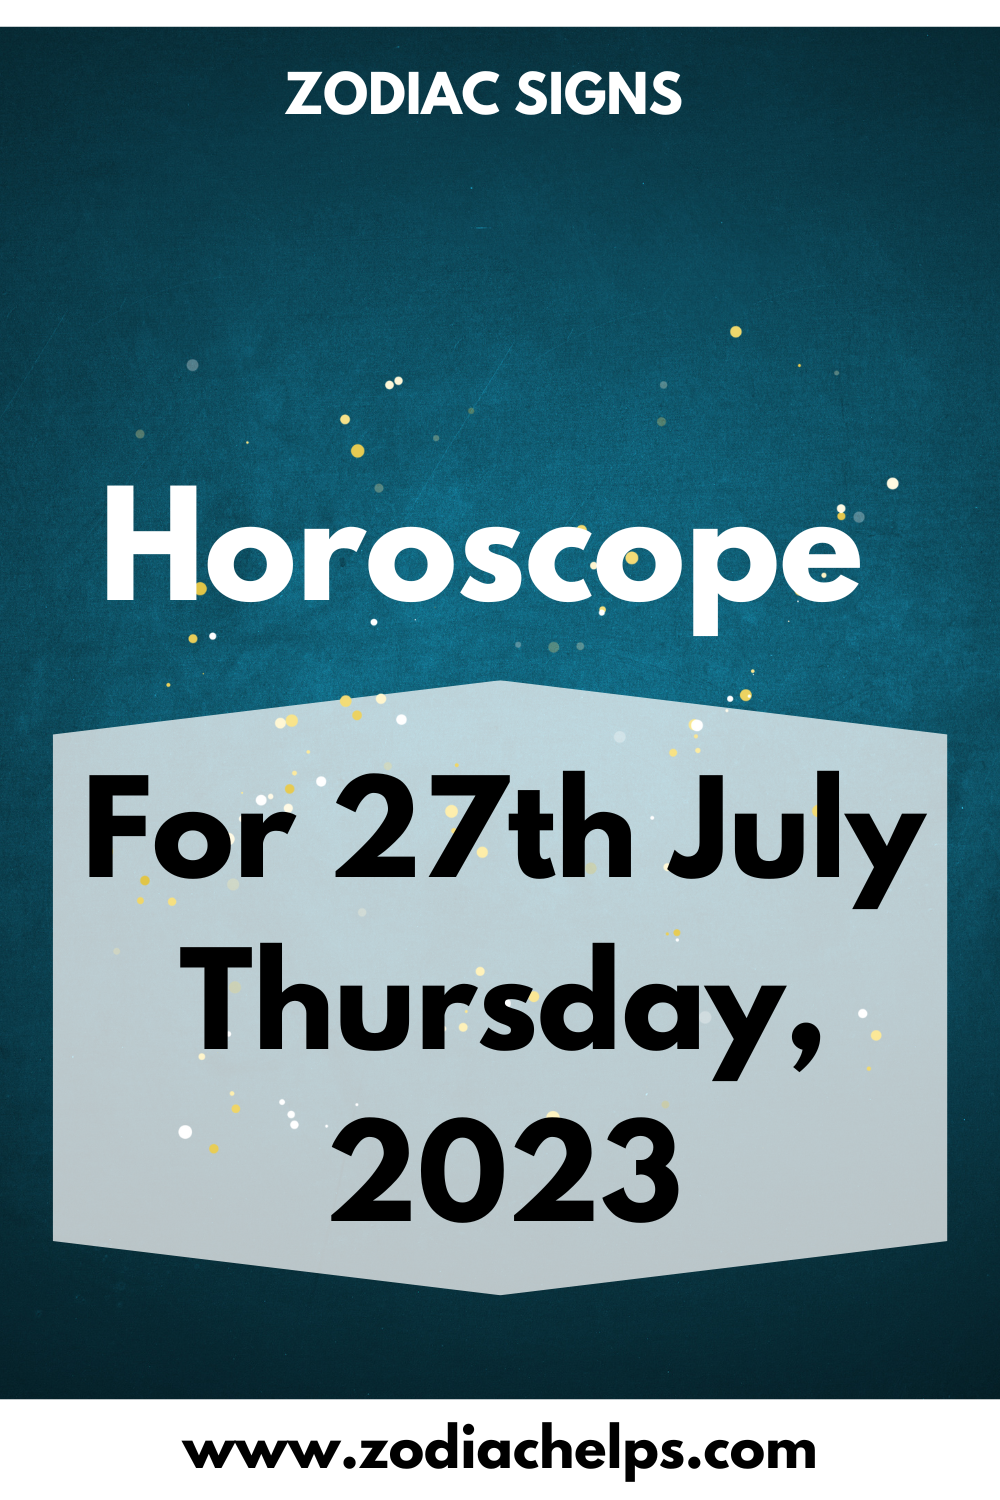 Horoscope for 27th July Thursday, 2023